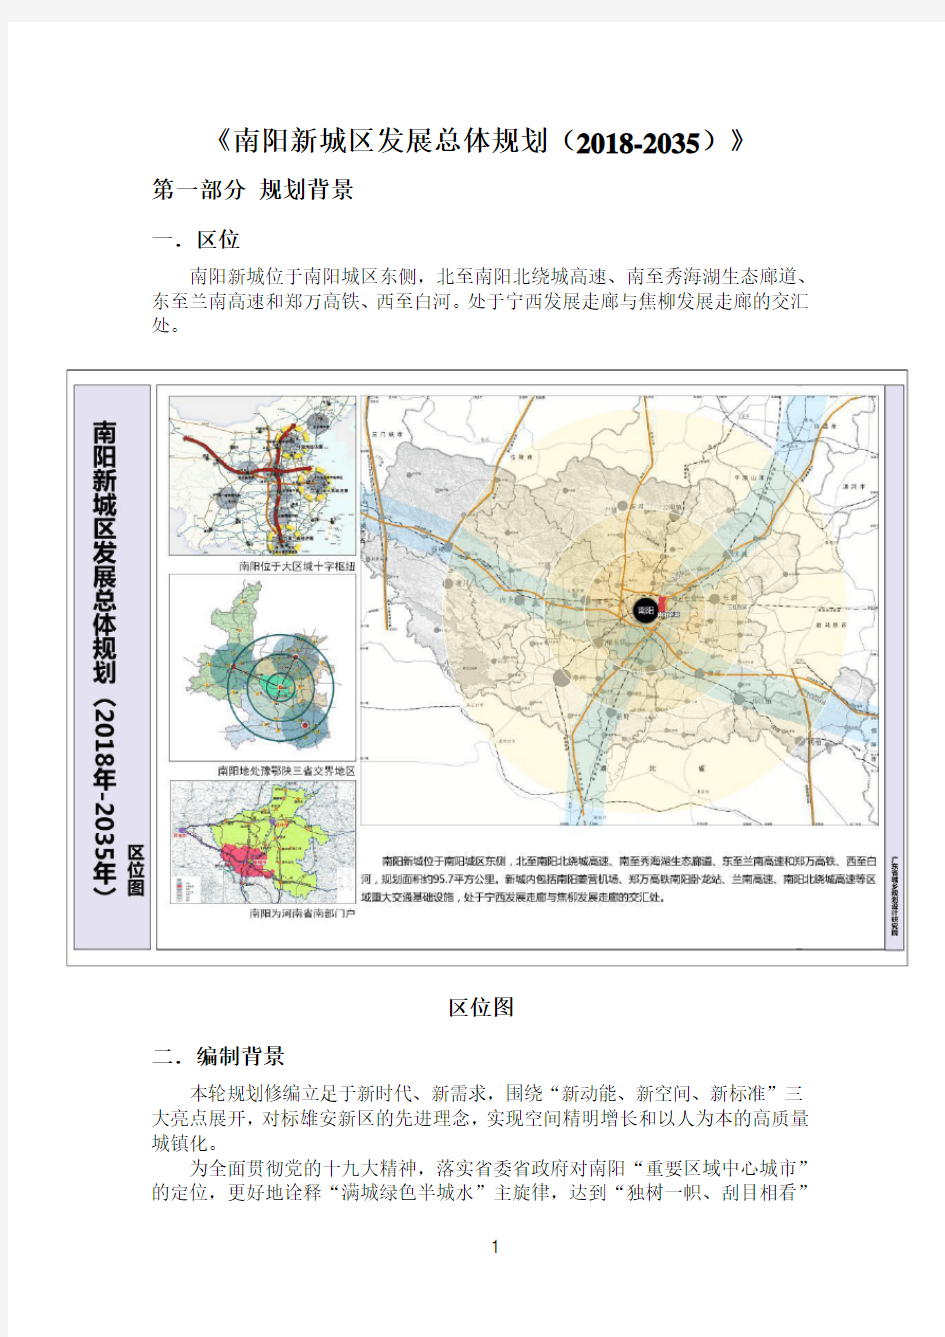 《南阳新城区发展总体规划(2018-2035)》